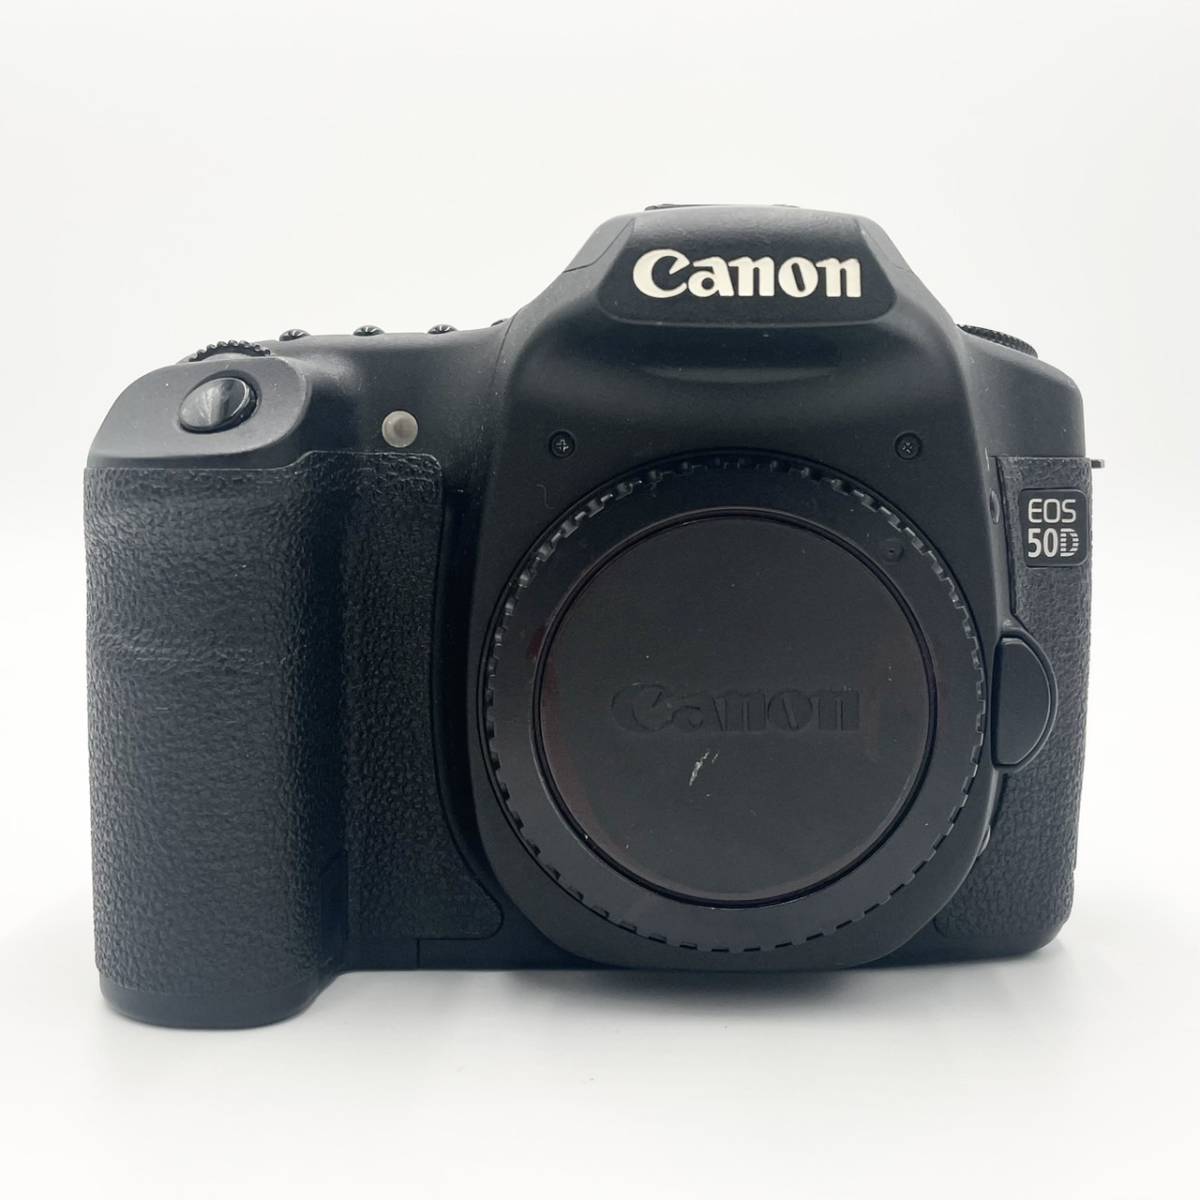 カメラ デジタルカメラ 動作確認済み Canon キヤノン EOS 50D ボディ ブラック オートフォーカス 一眼レフカメラ デジタル一眼 ボディキャップ付き